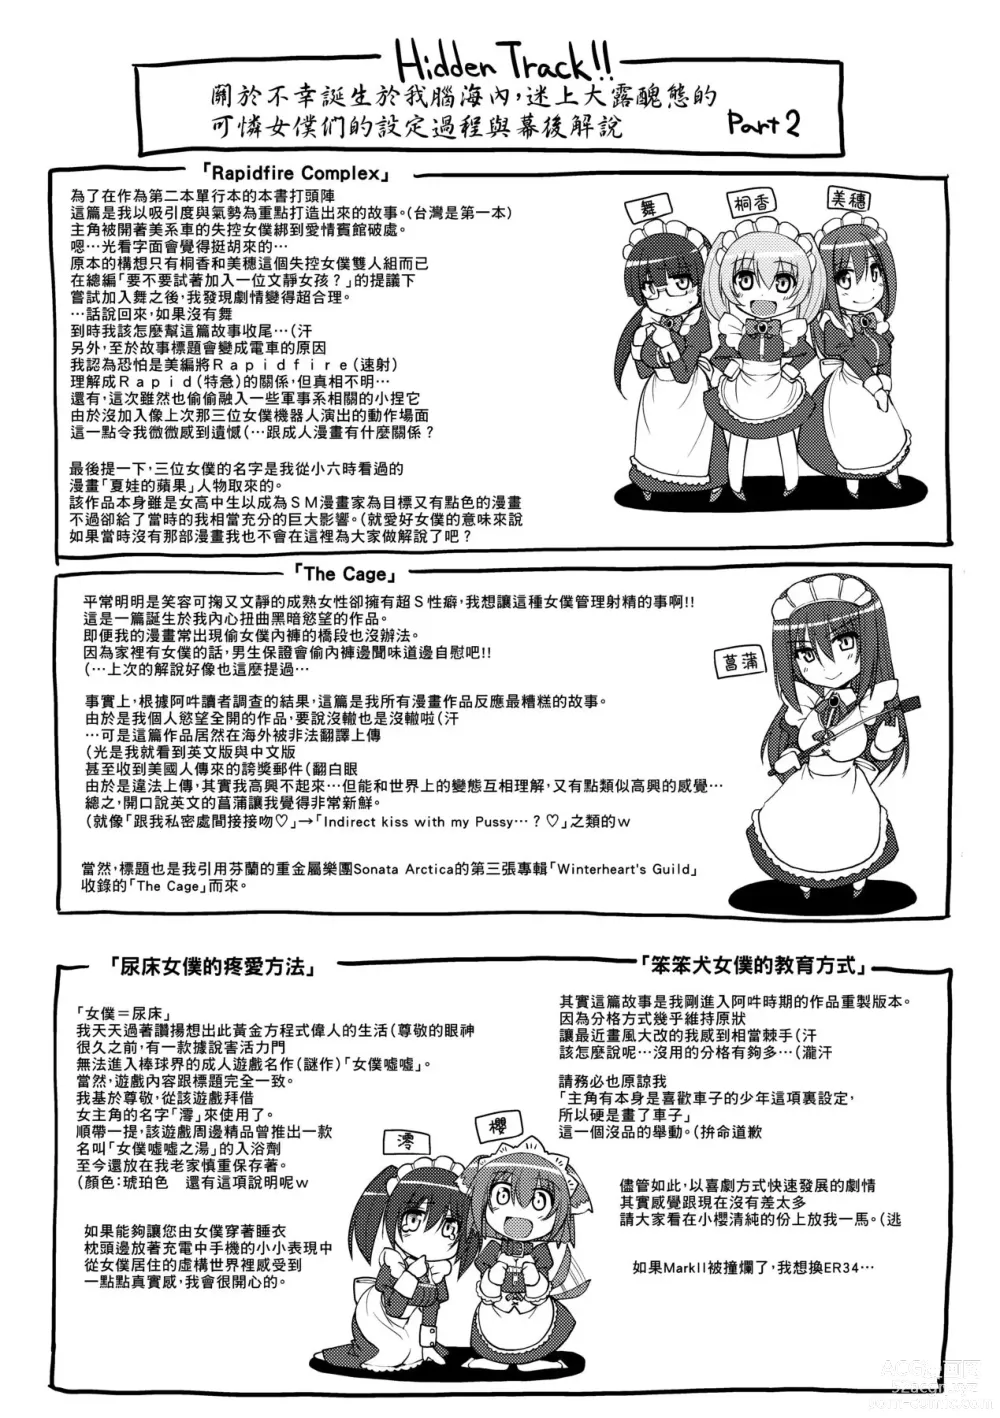 Page 213 of manga Maid no XXX wa Anata no Tame ni (decensored)